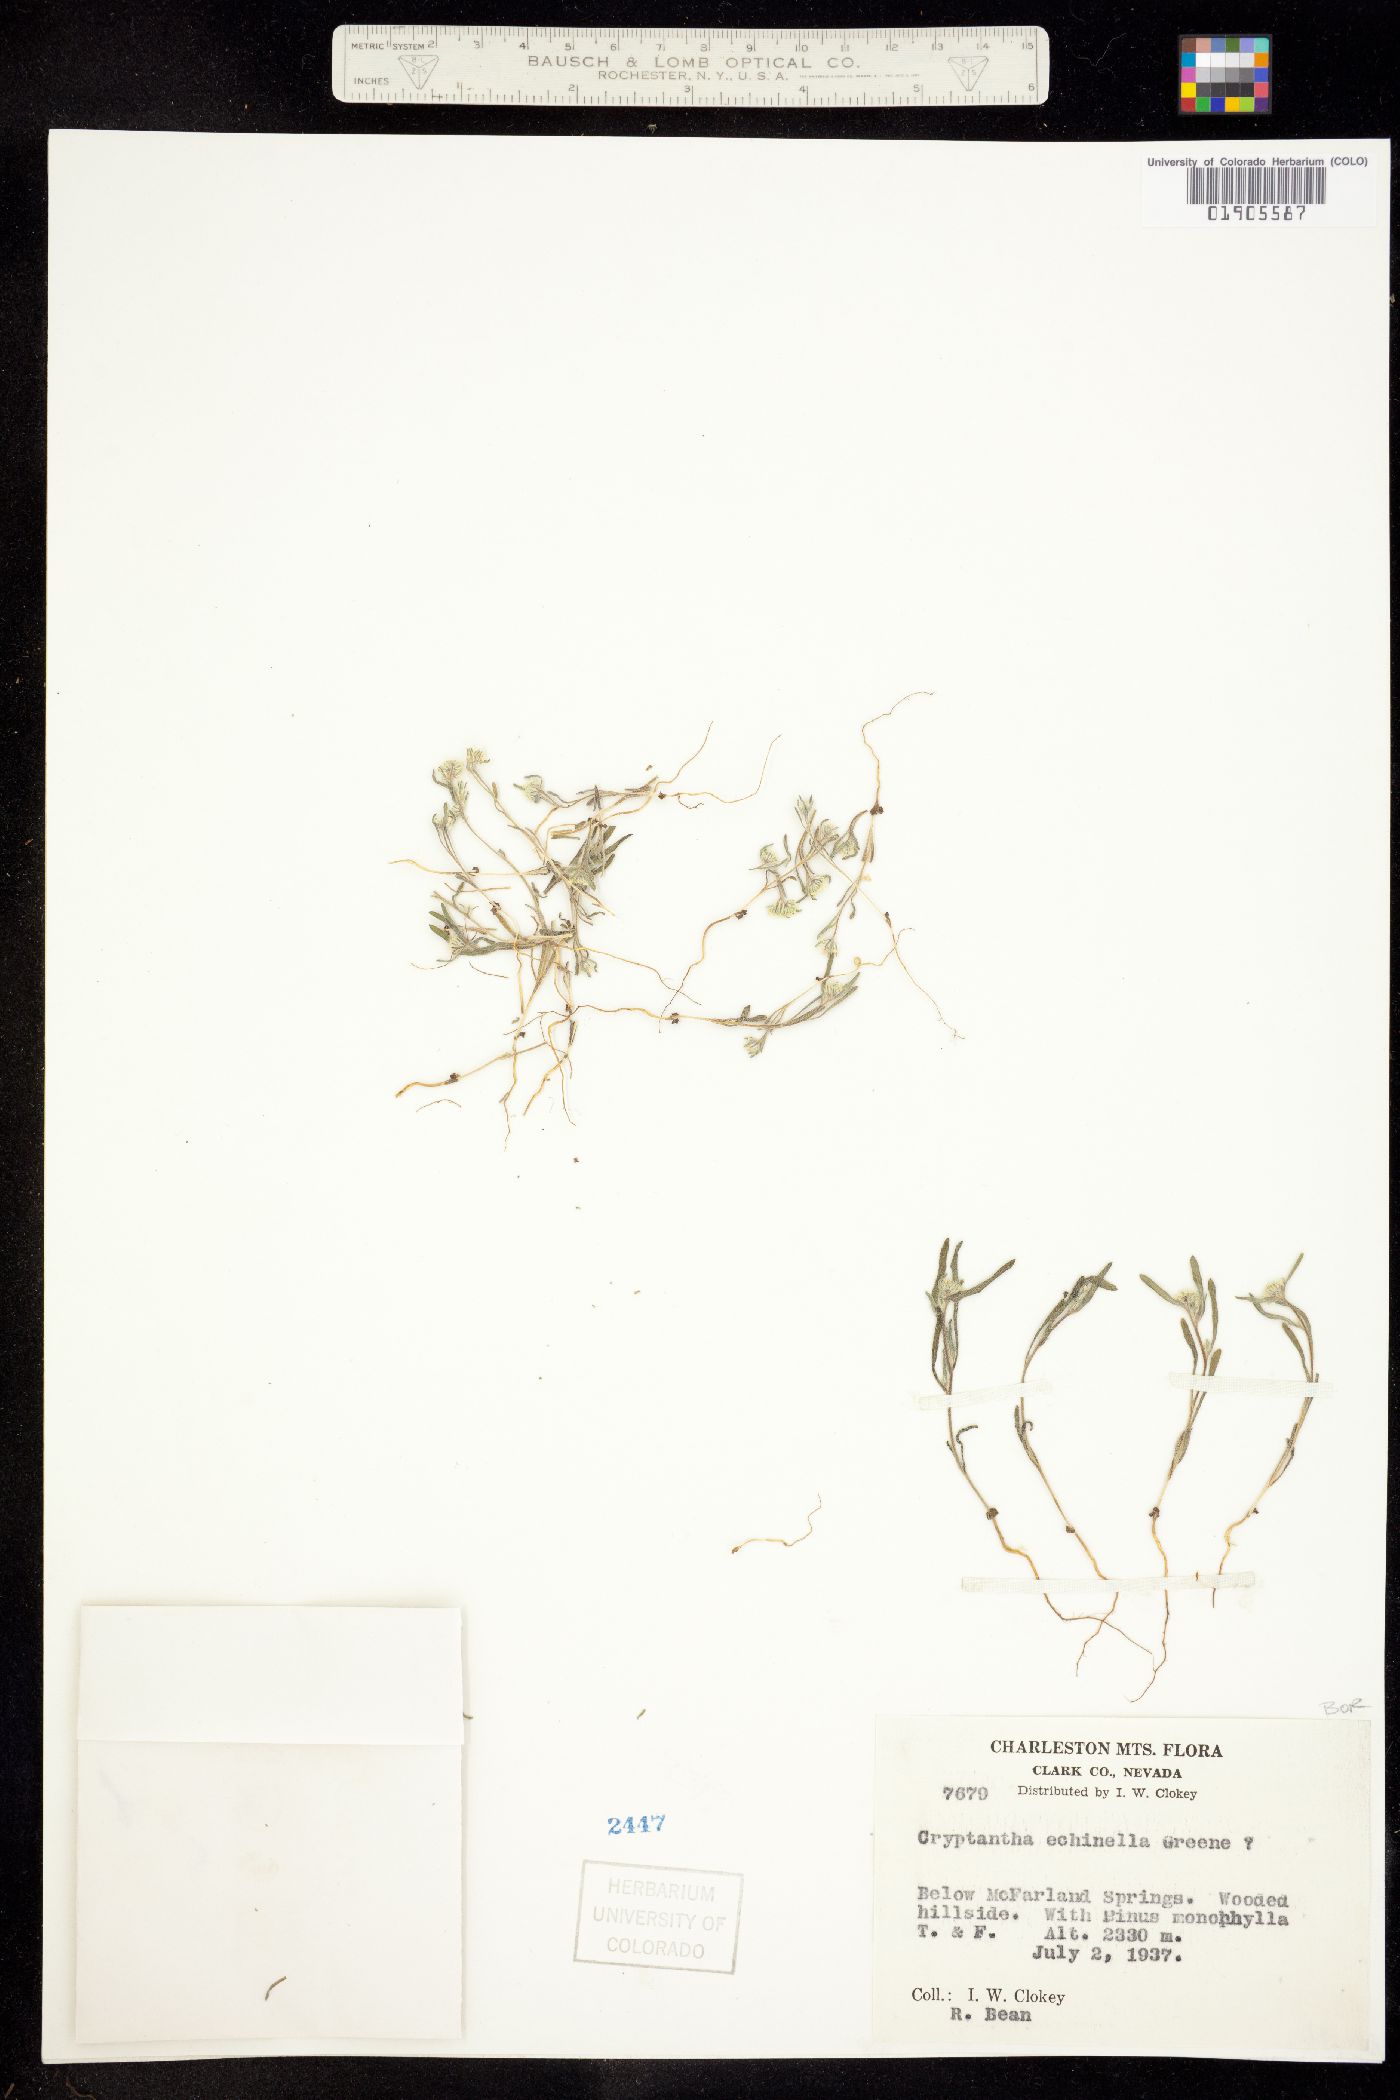 Cryptantha echinella image